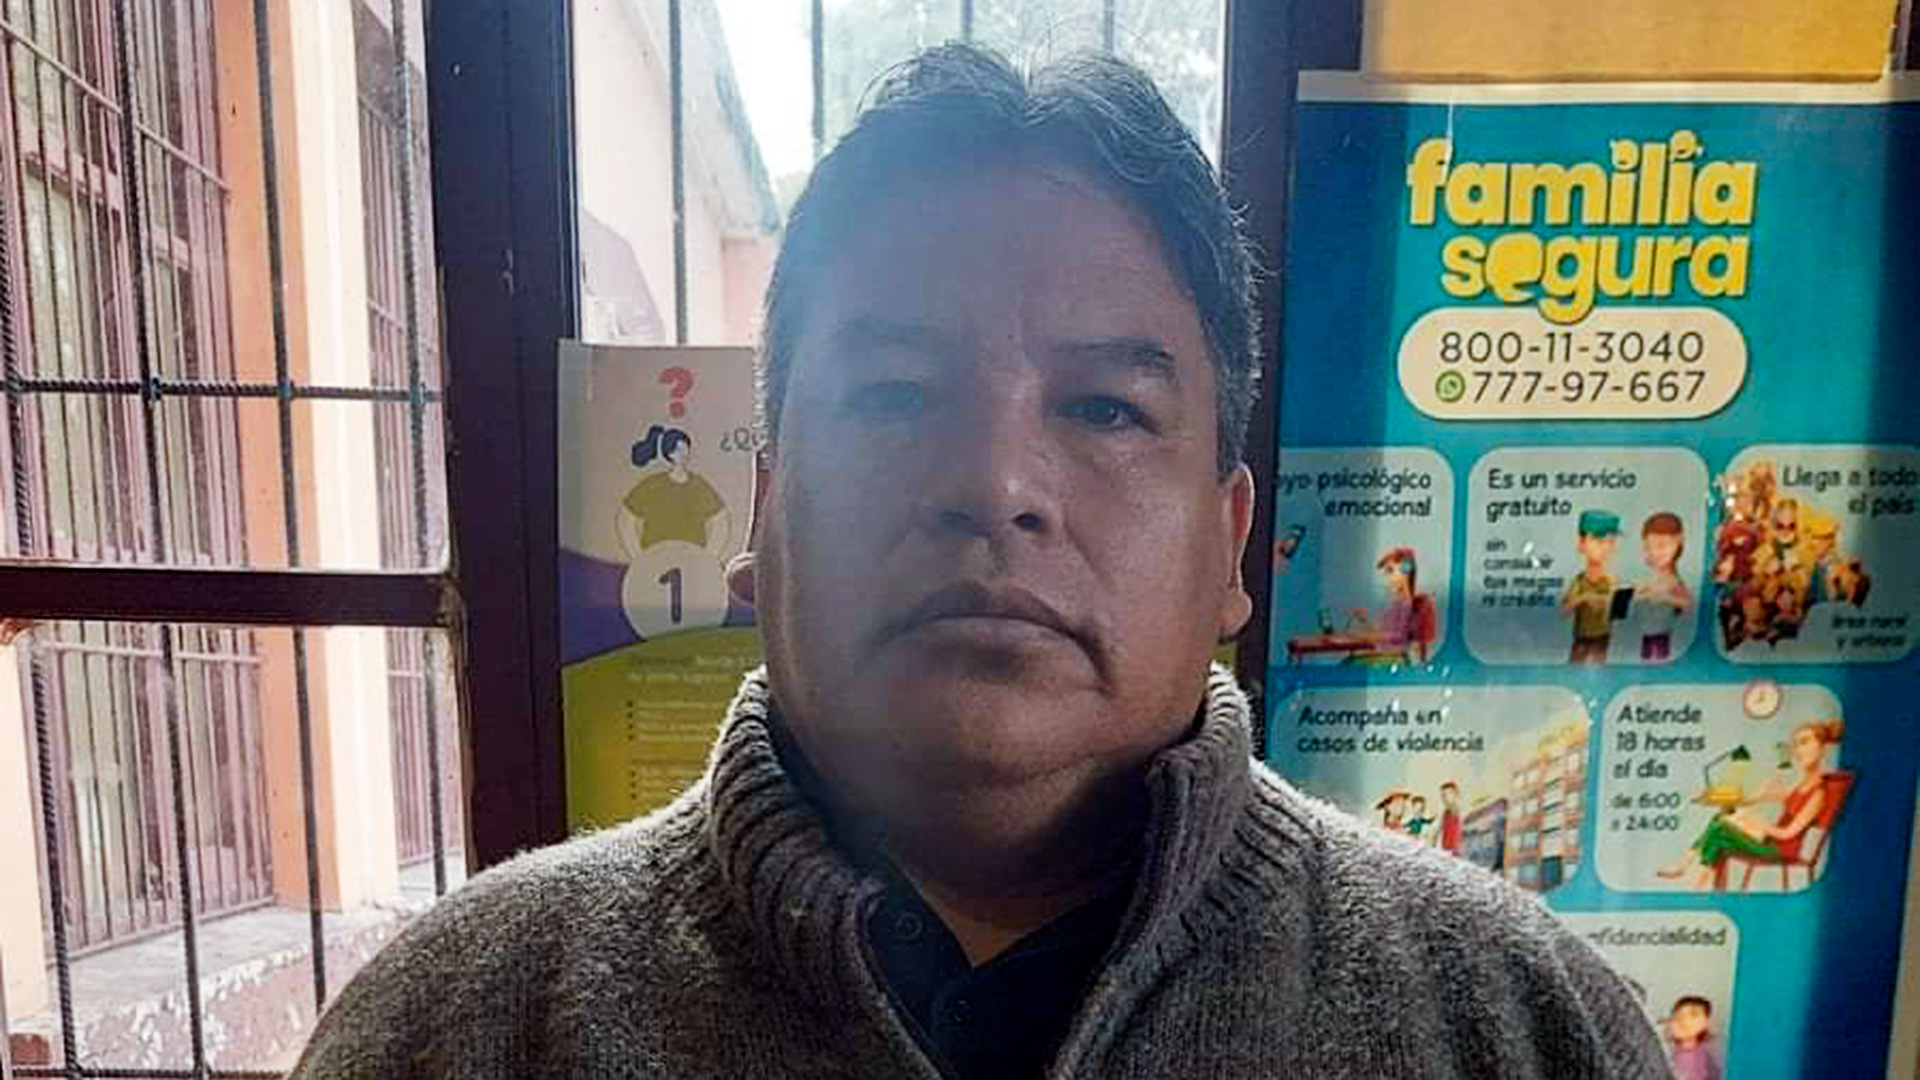 Detuvieron en Bolivia a un sacerdote acusado de abuso sexual de menores: “No habrá impunidad”